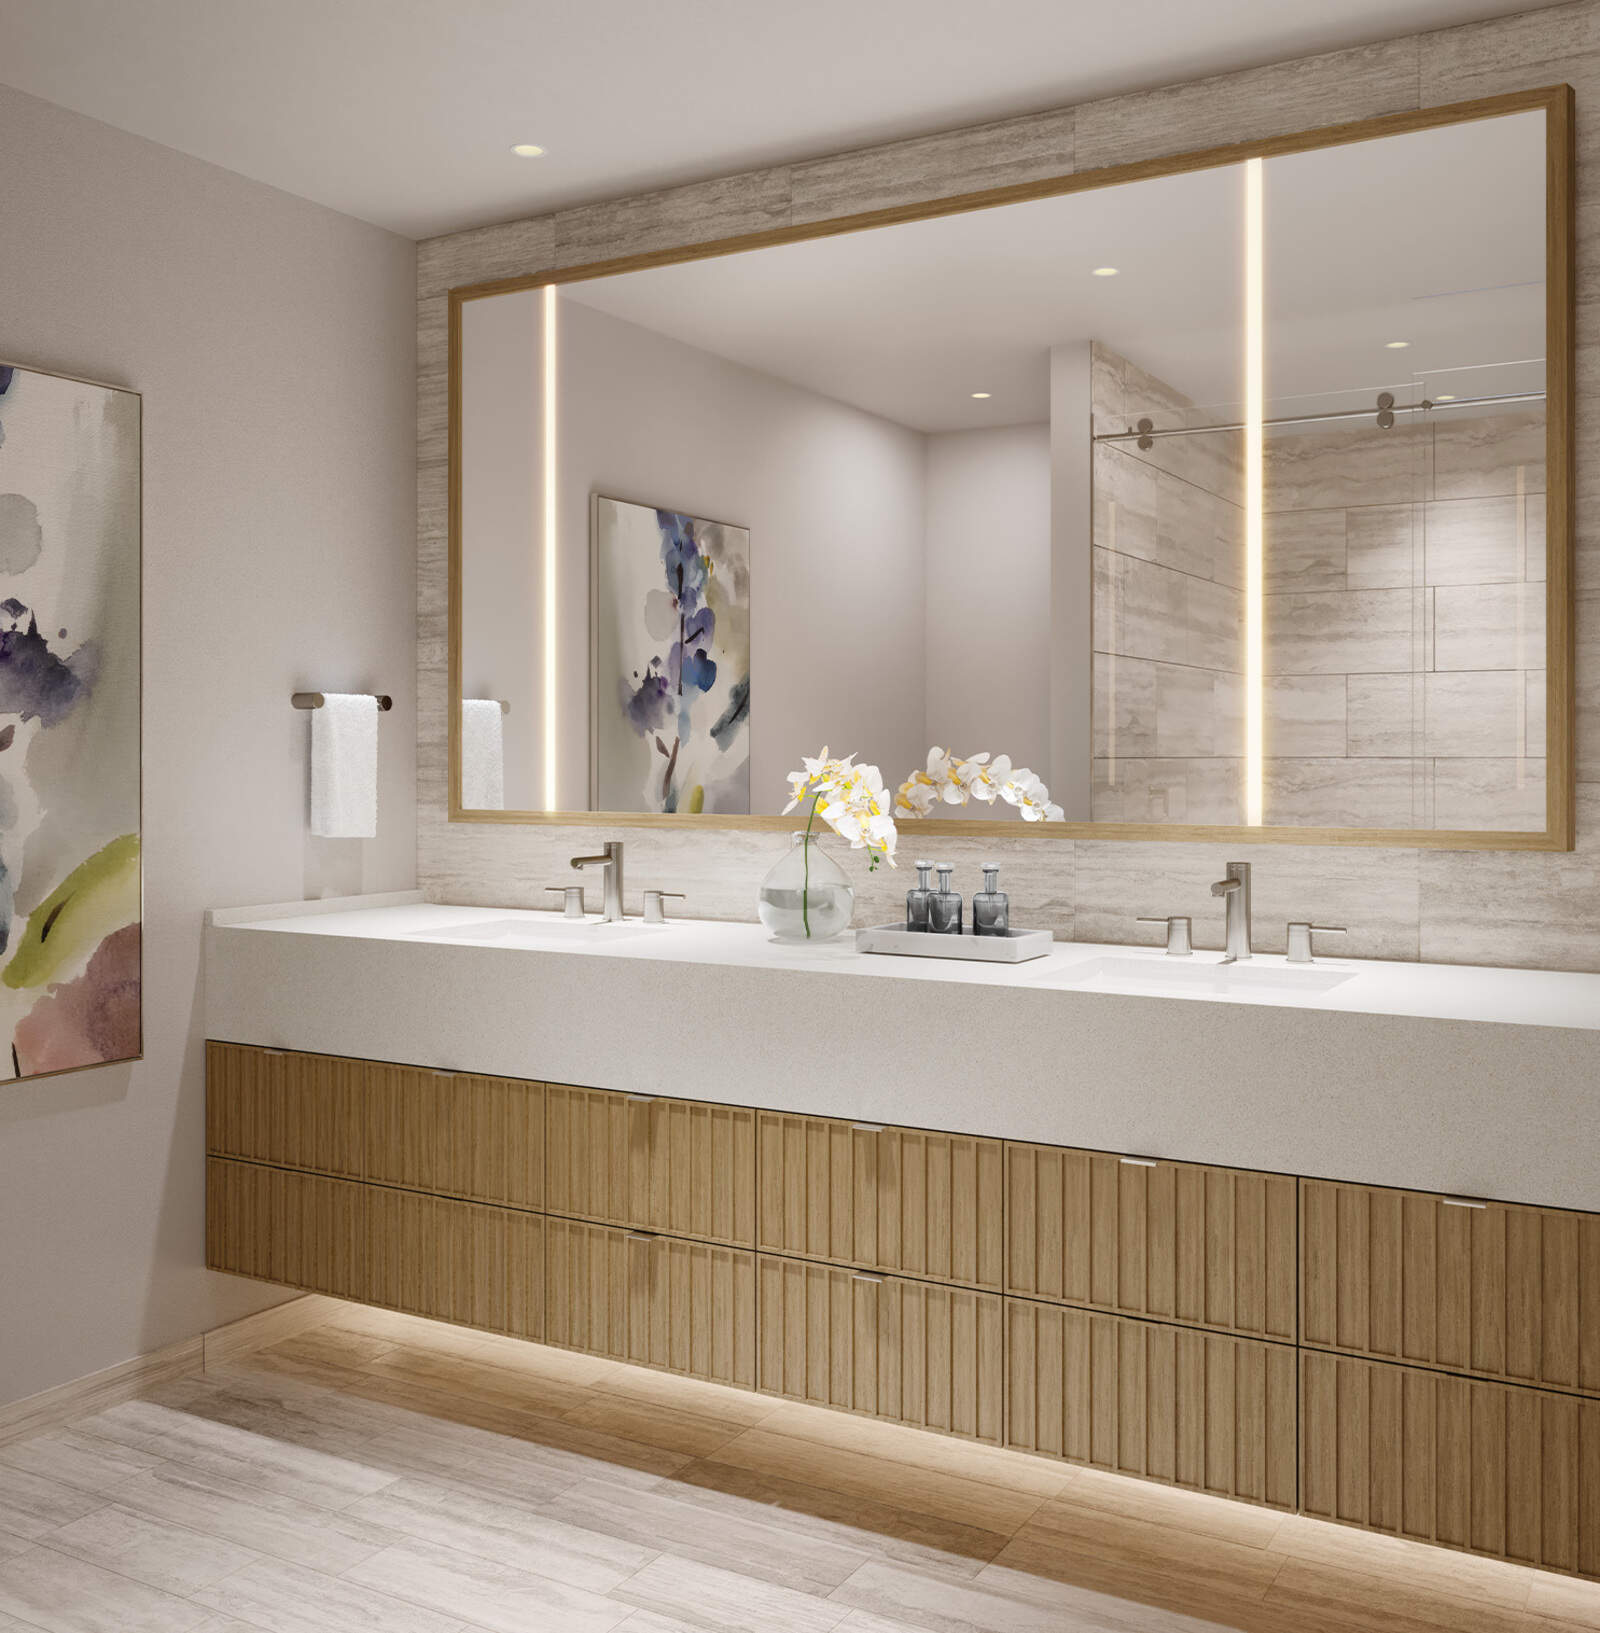 The Launiu bathroom rendering